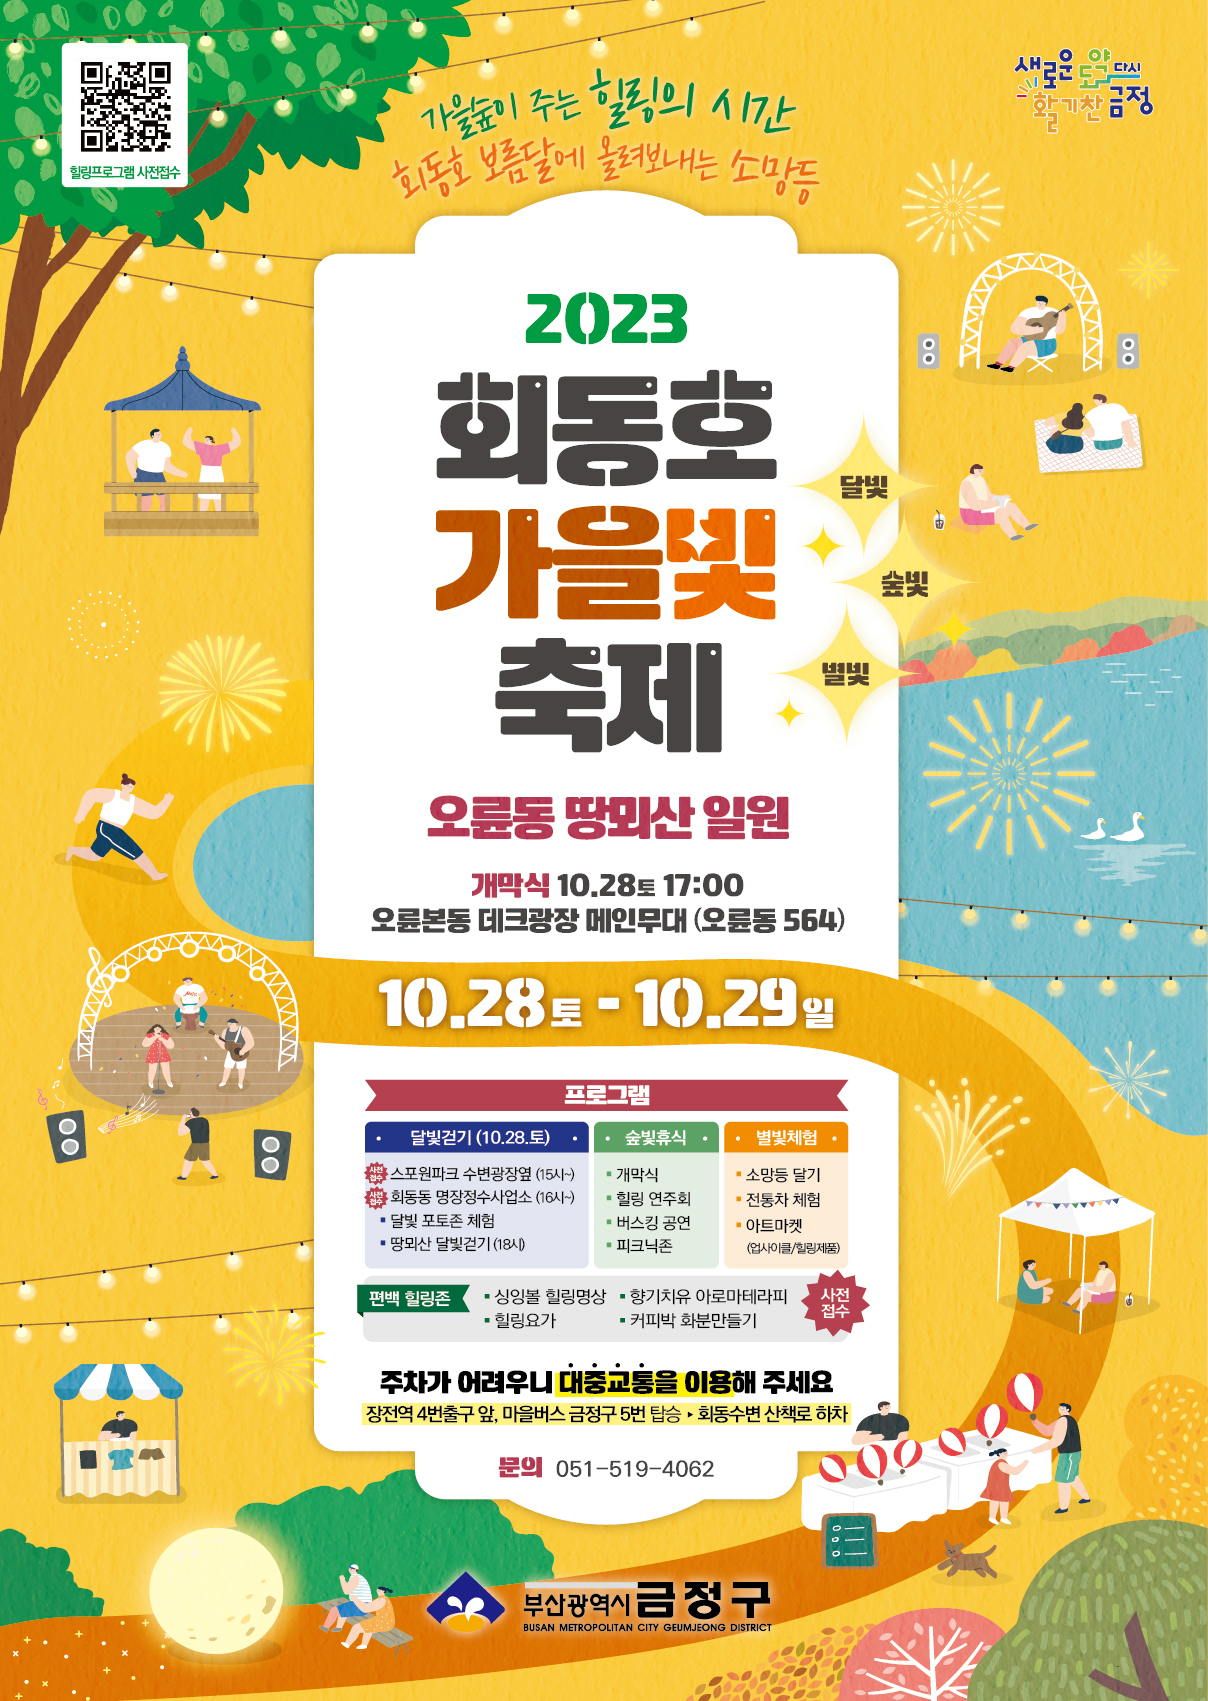 2023 회동호 가을빛(달빛,숲빛,별빛) 축제 개최 게시물의 첨부 이미지 1